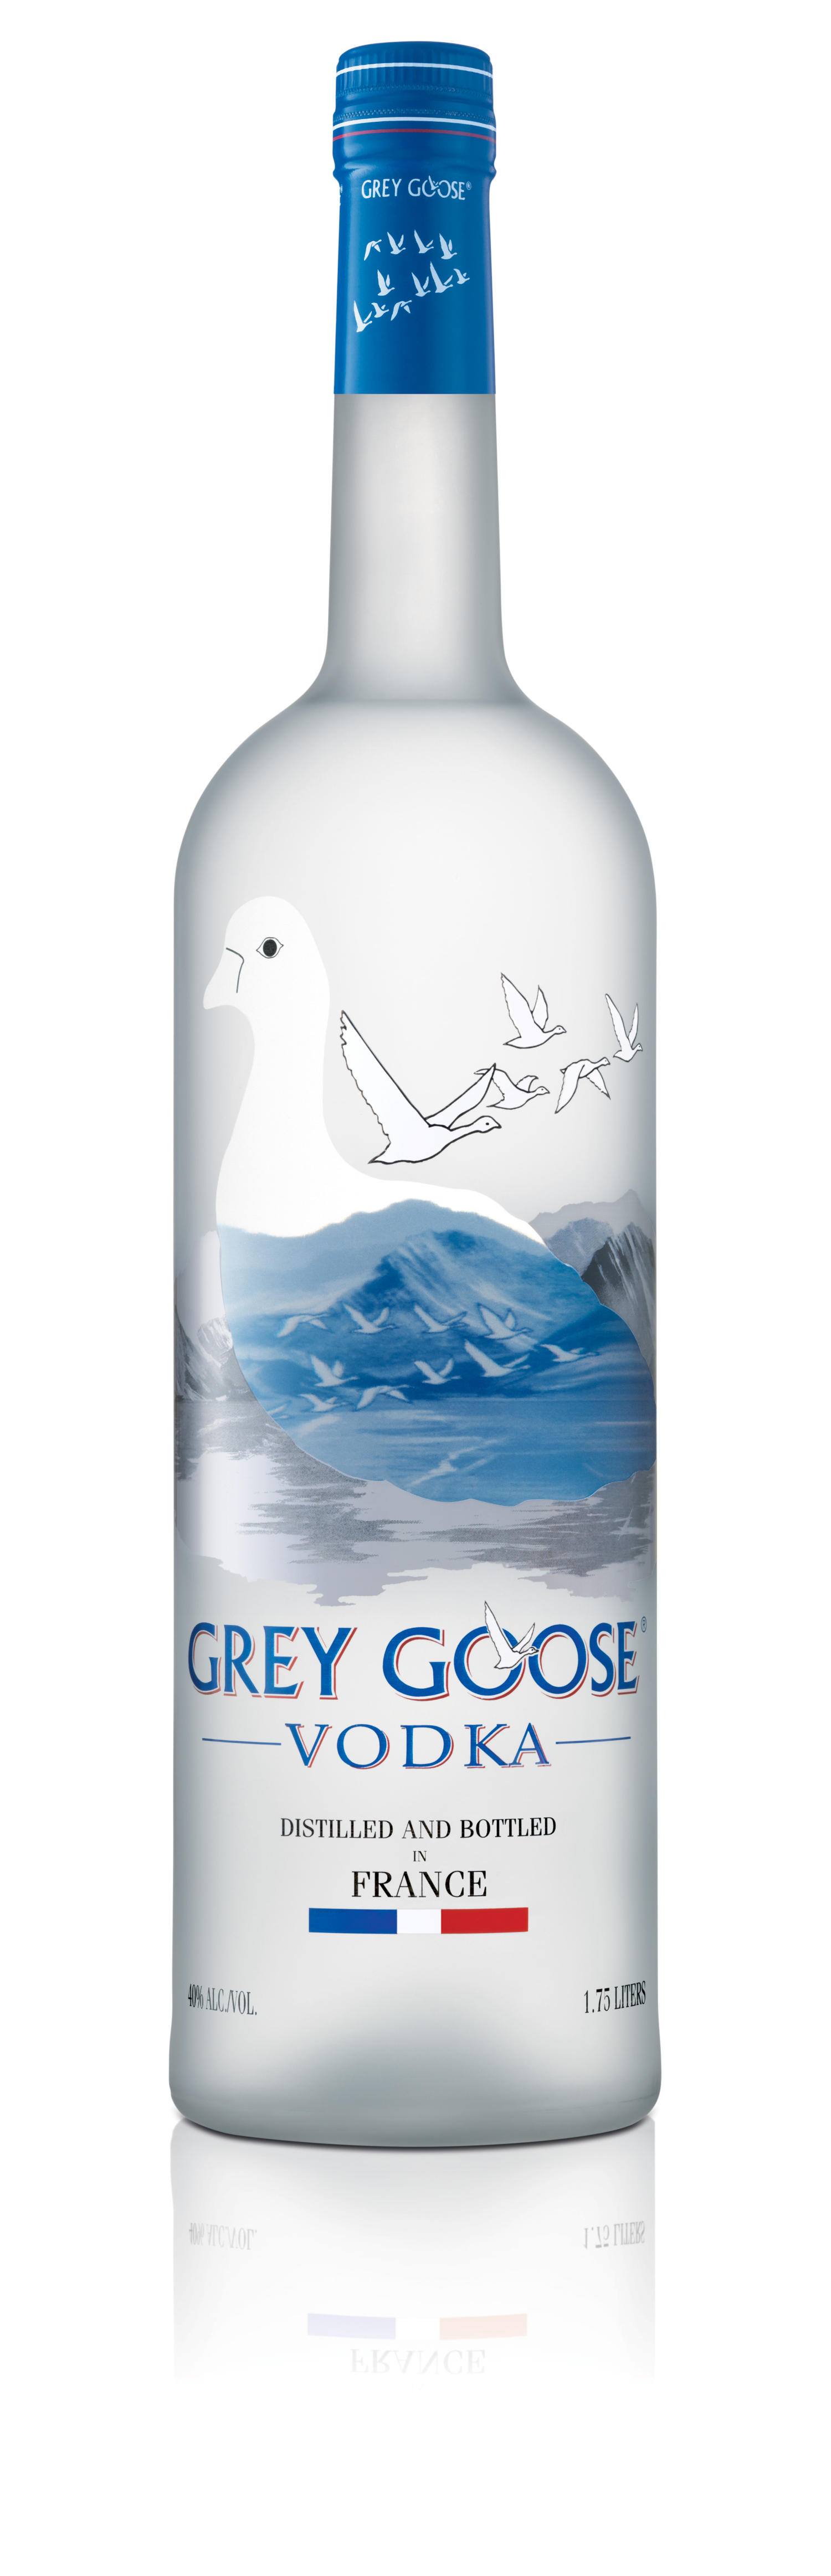 Grey goose vodka 40° 1l75 